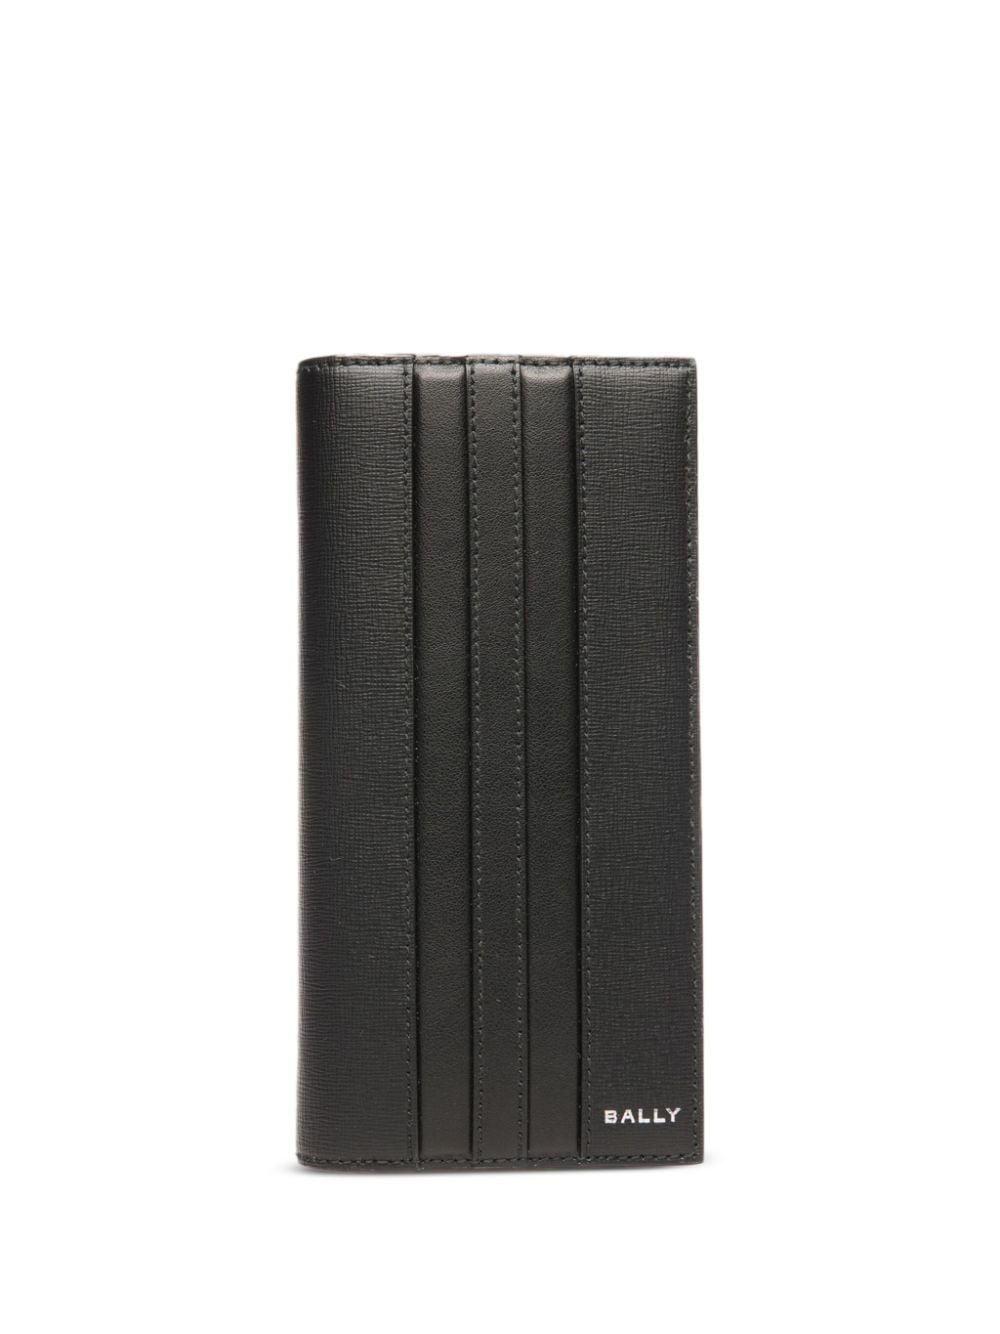 Bally Bi-fold Leather Wallet In Black